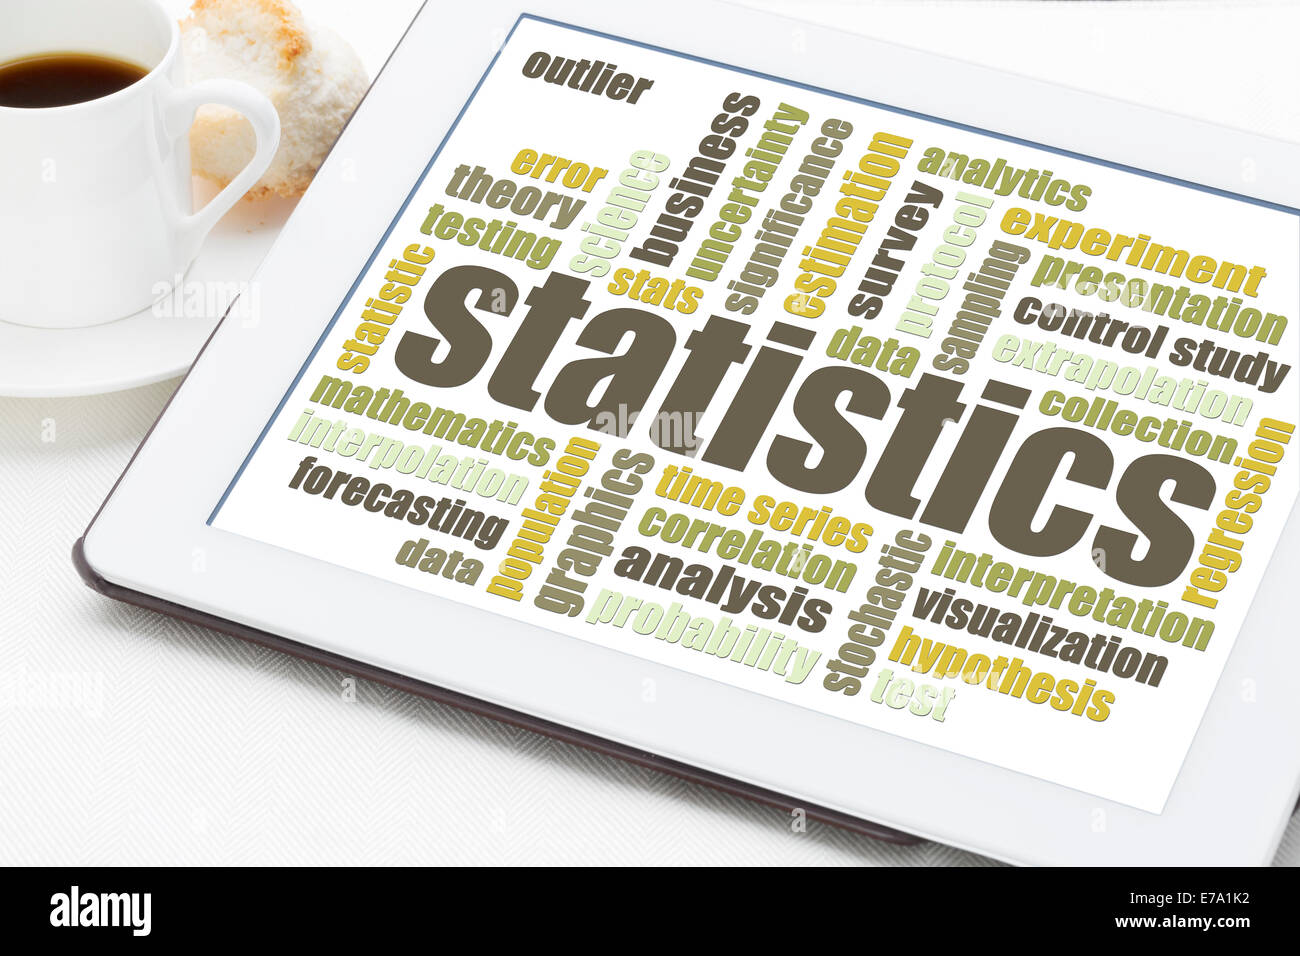 Statistiche e analisi dei dati cloud di parola su una tavoletta digitale con una tazza di caffè Foto Stock